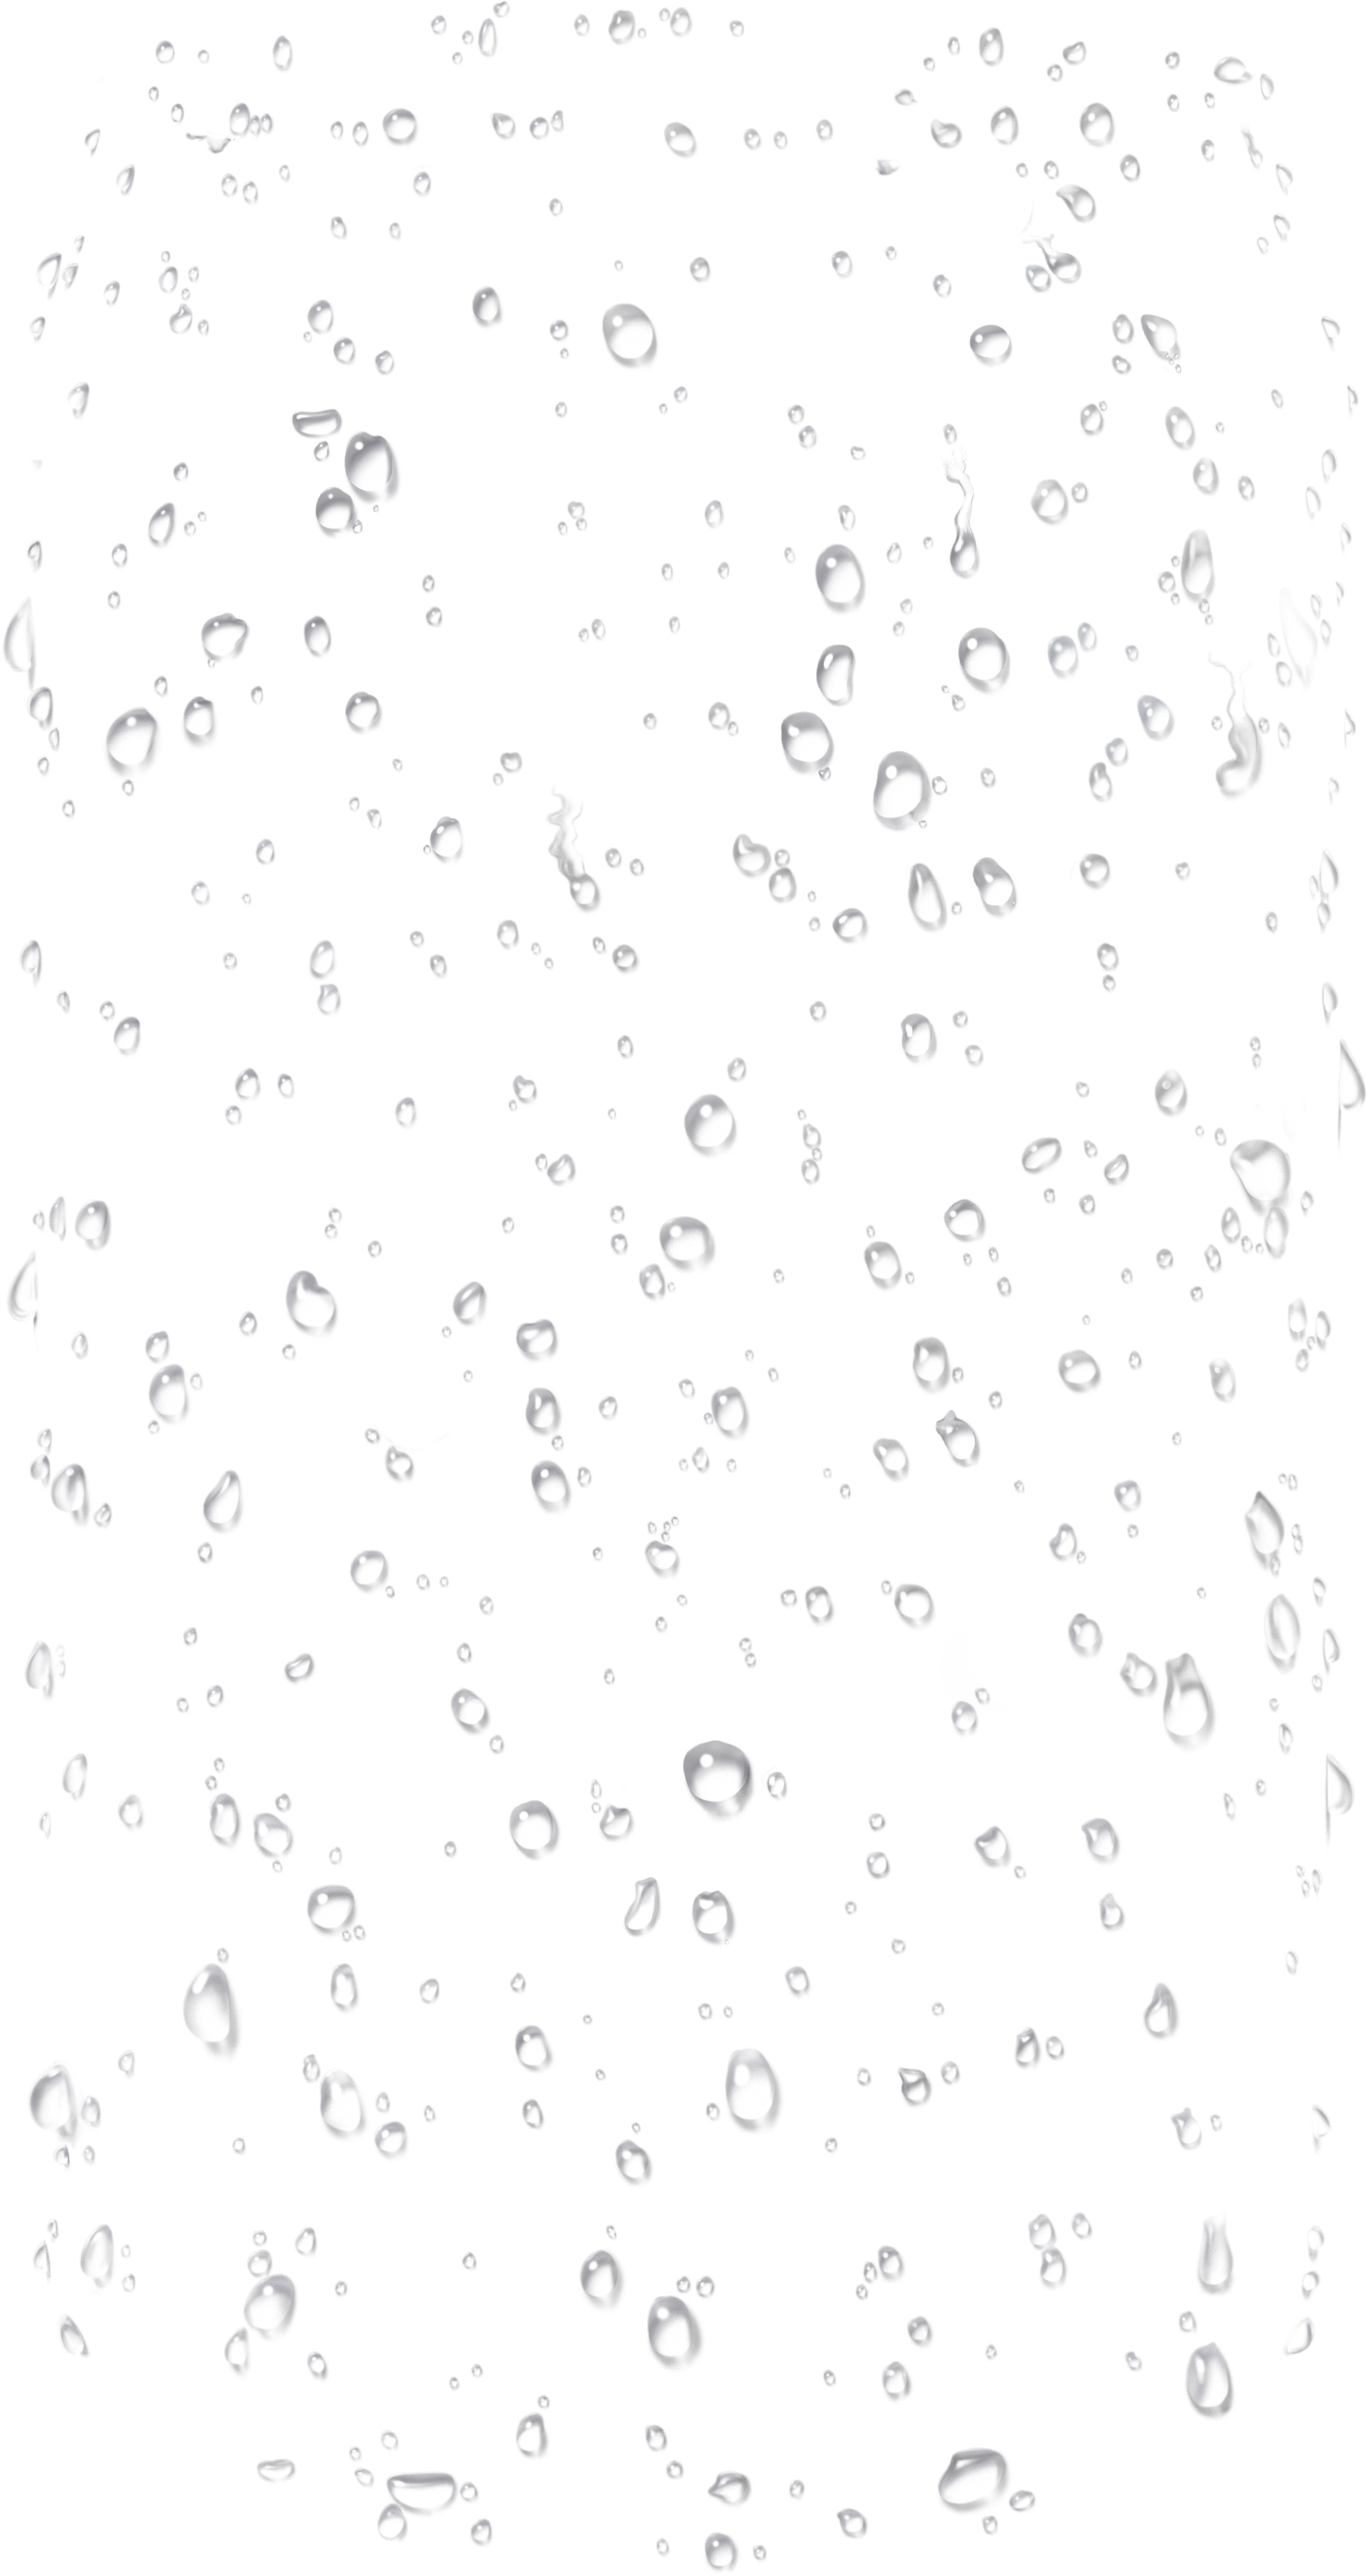 Water Drop Transparent PNG